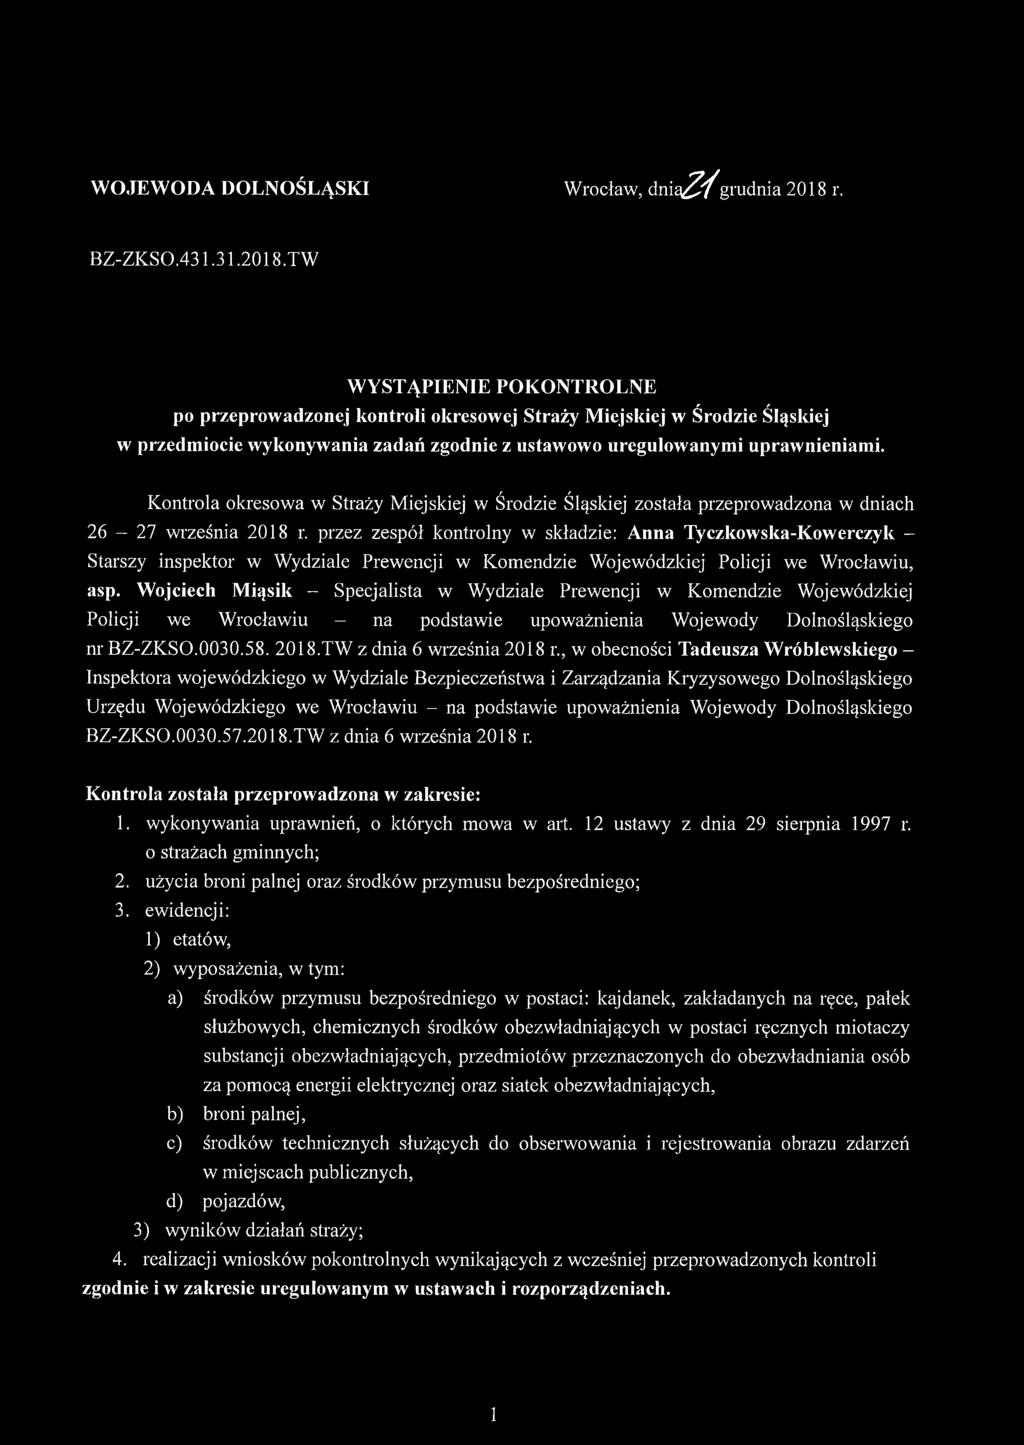 Kontrola okresowa w Straży Miejskiej w Środzie Śląskiej została przeprowadzona w dniach 26-27 września 2018 r.